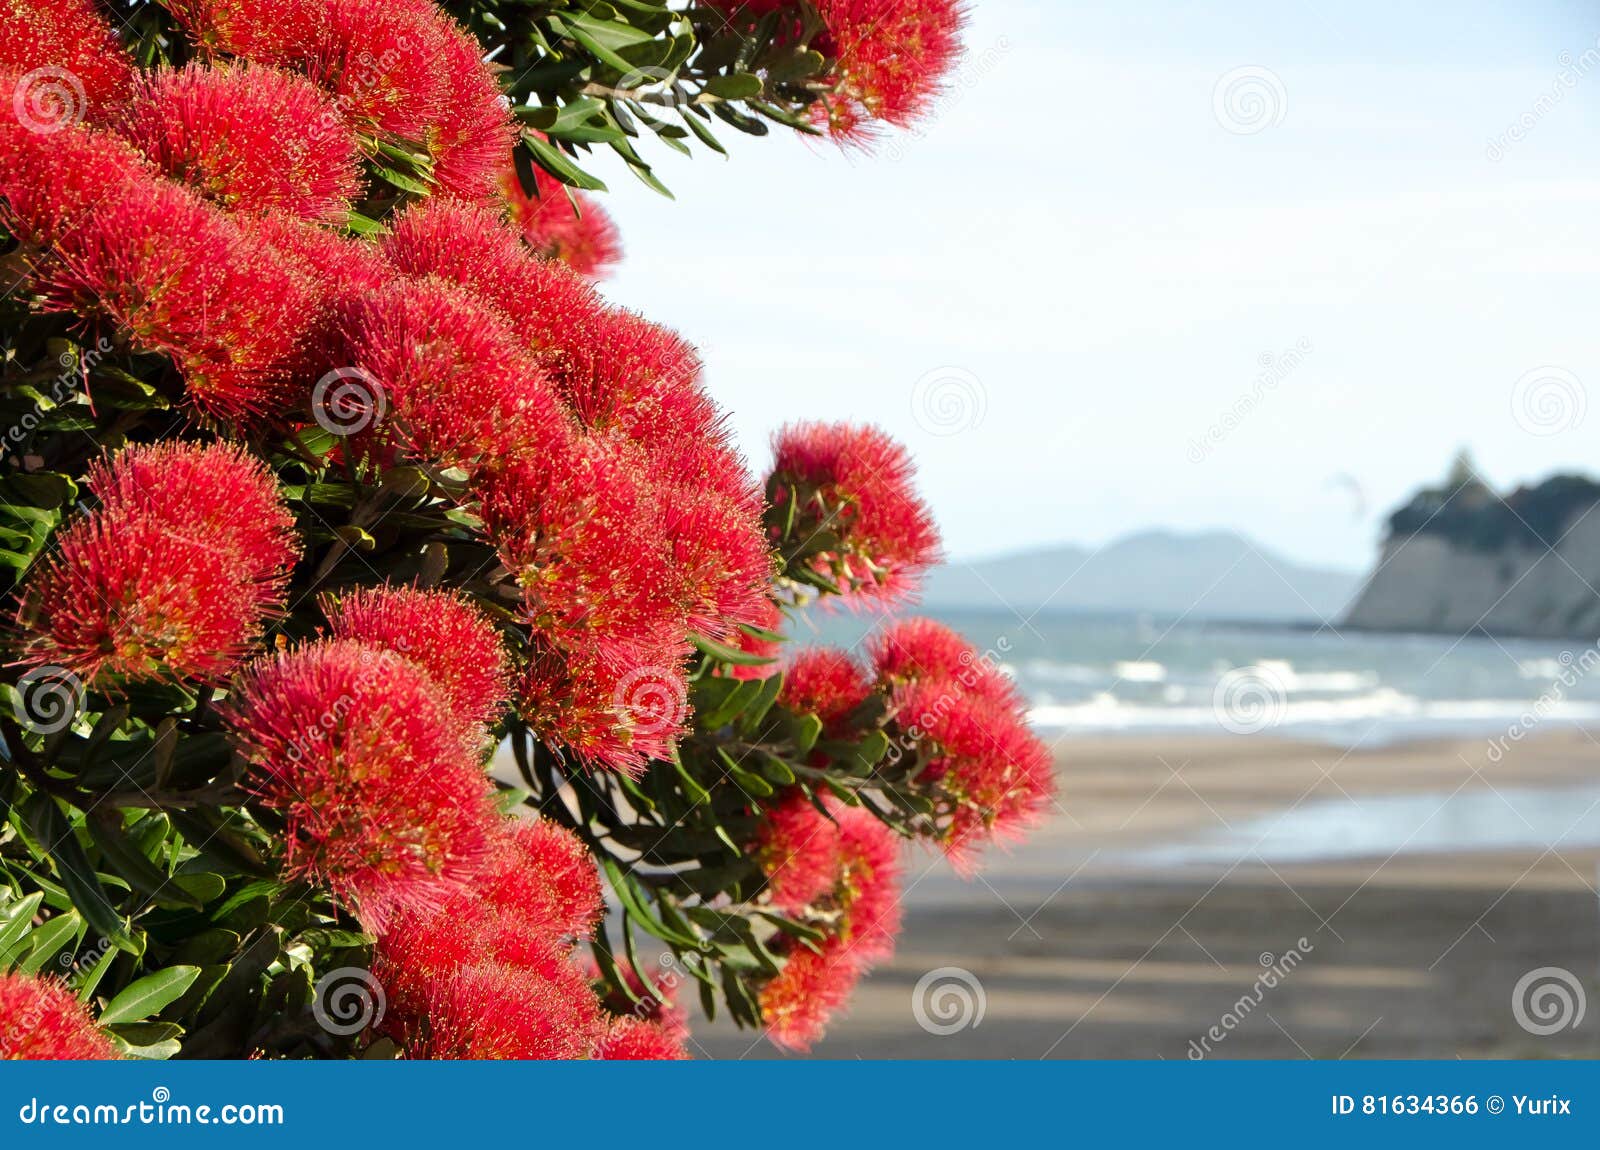 新西兰 本国的 开花 - Pixabay上的免费照片 - Pixabay